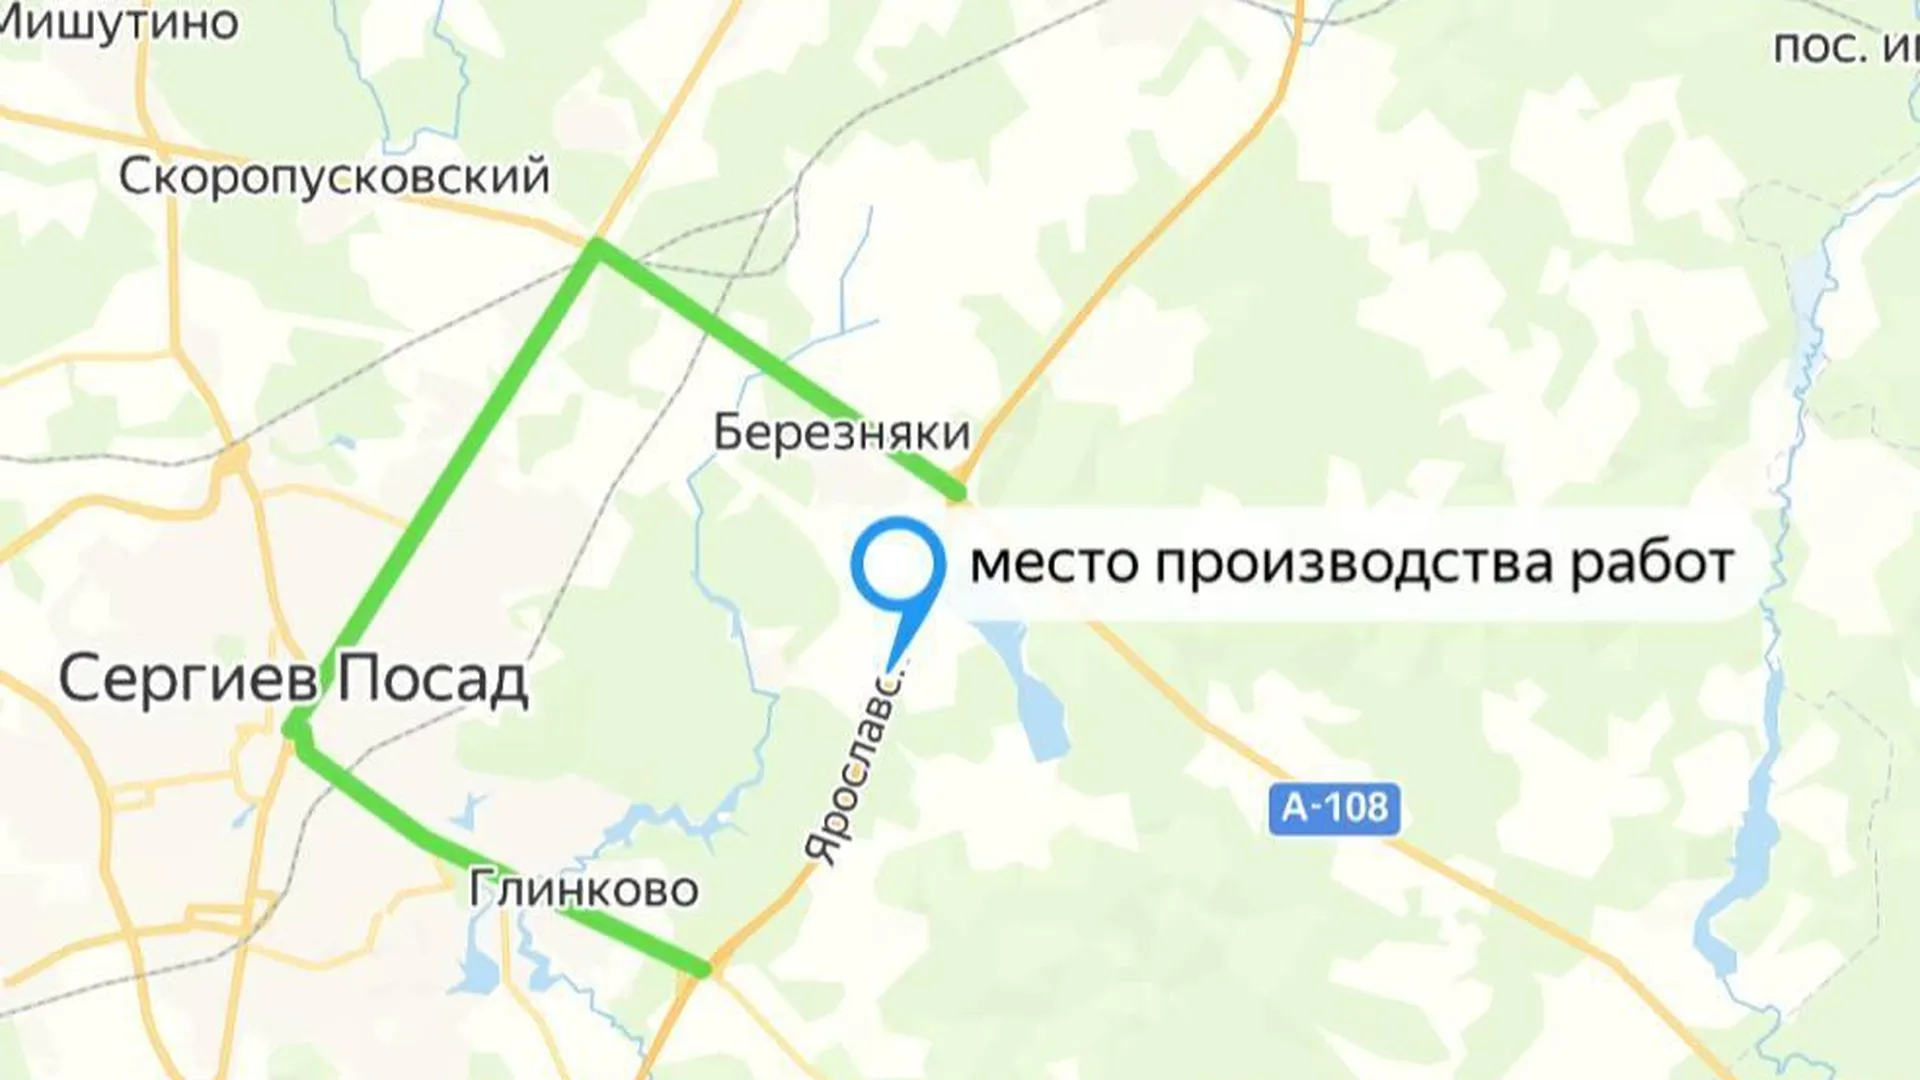 Движение авто временно закроют на участке трассы М-8 «Холмогоры» с 14 по 17 мая